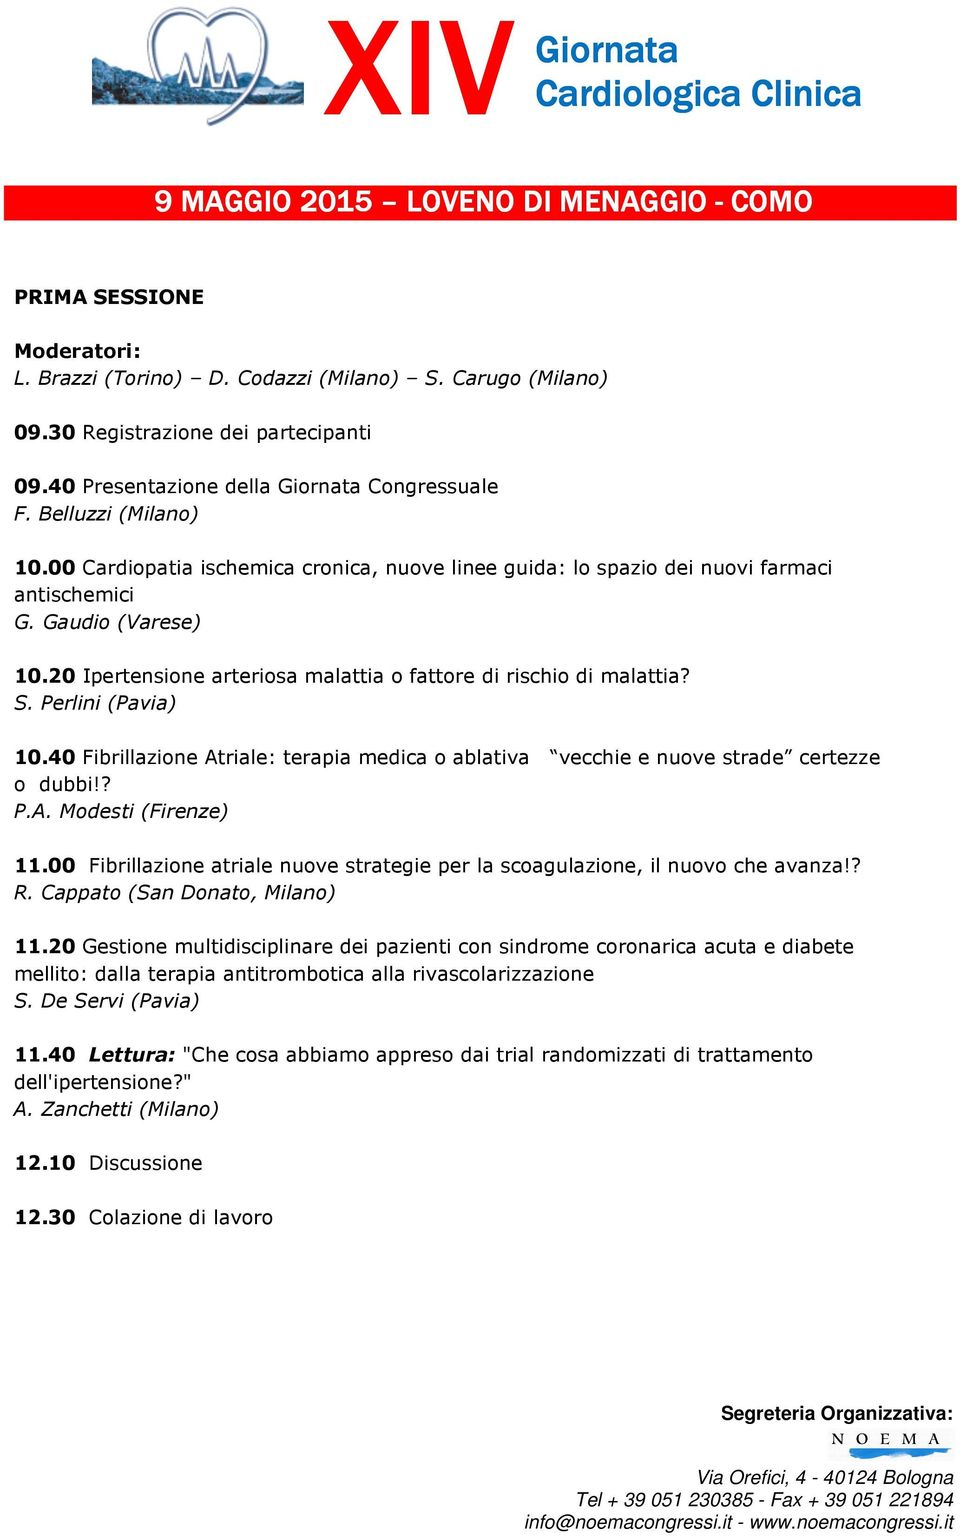 Perlini (Pavia) 10.40 Fibrillazione Atriale: terapia medica o ablativa vecchie e nuove strade certezze o dubbi!? P.A. Modesti (Firenze) 11.